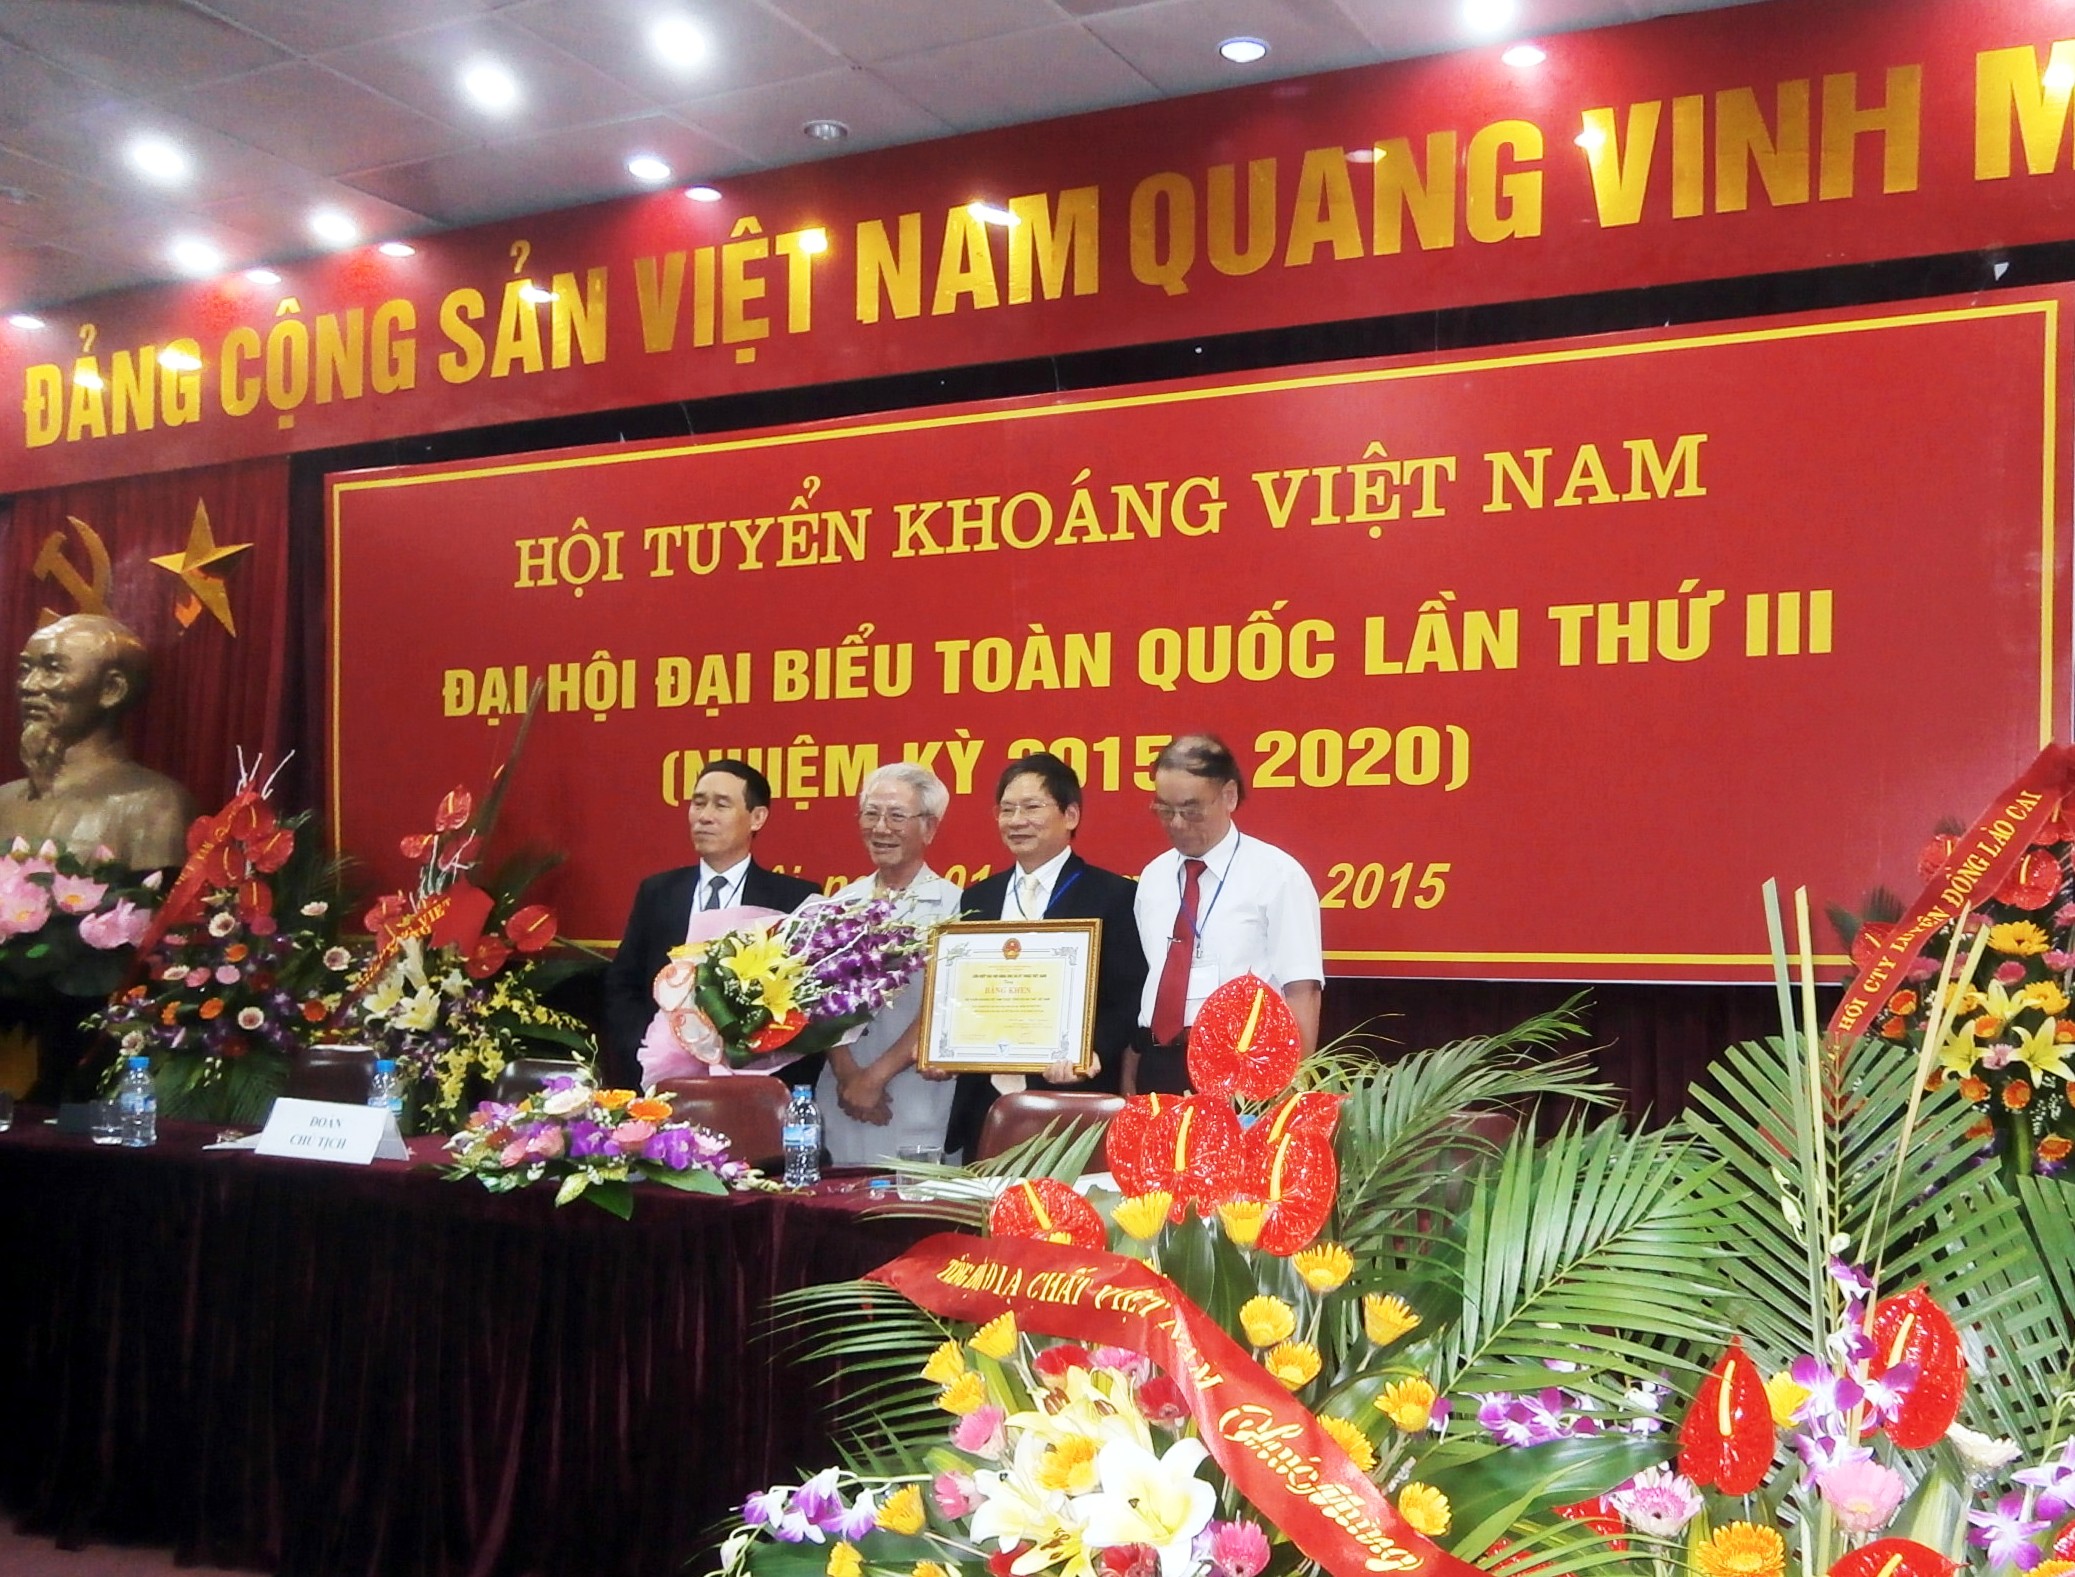 Đại hội Đại biểu toàn quốc Hội Tuyển khoáng Việt Nam